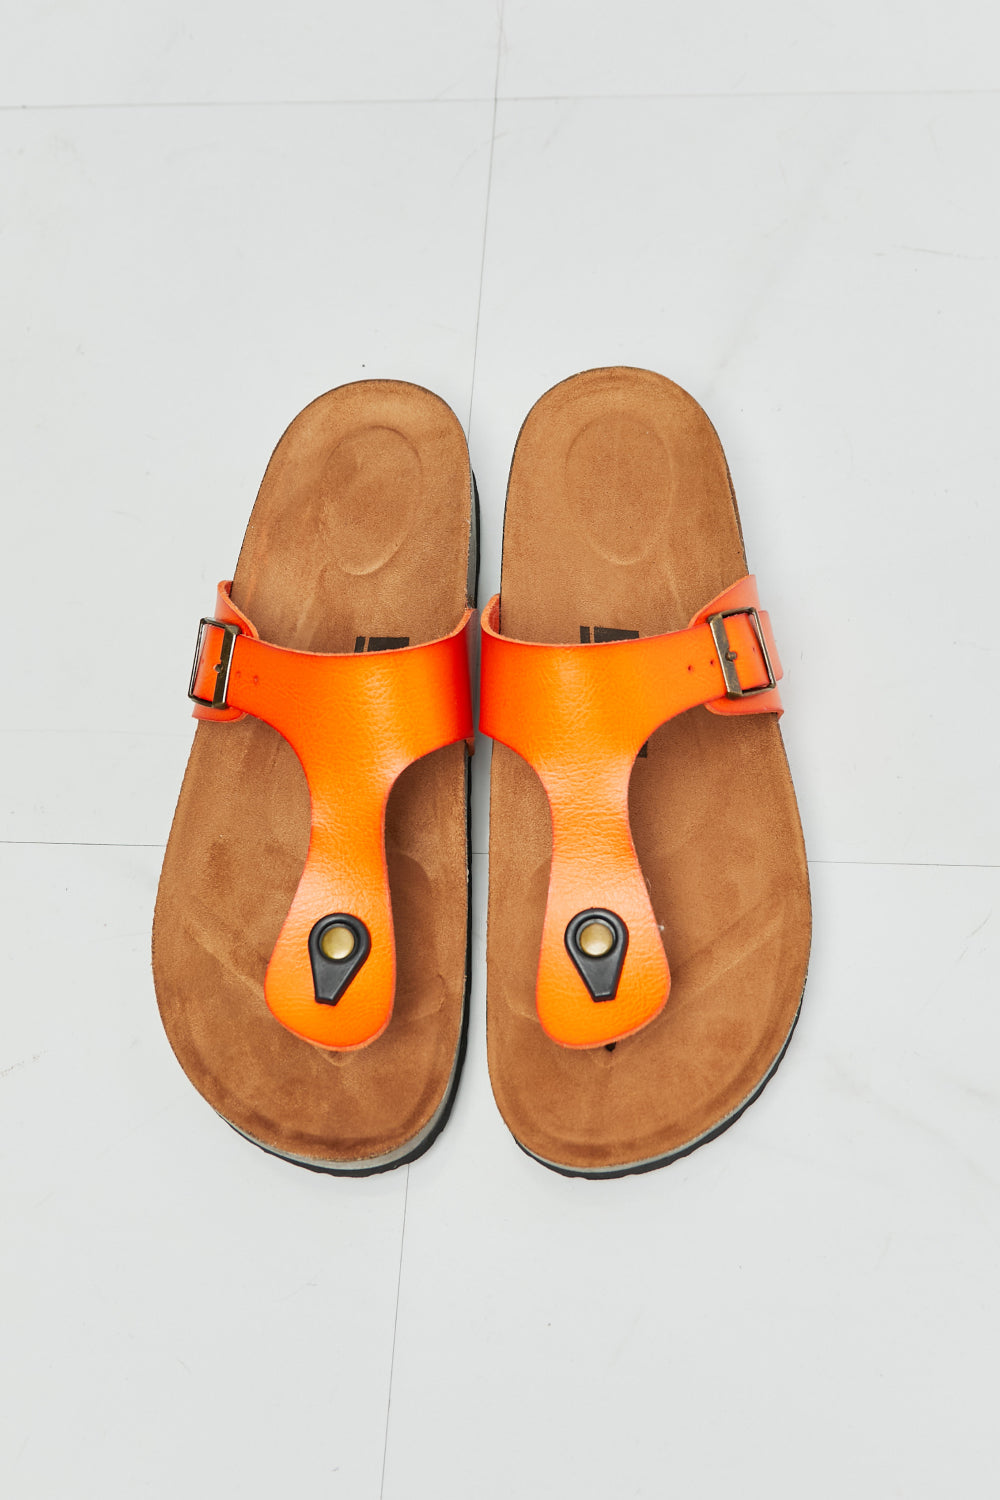 MMShoes Drift Away T-Strap Flip-Flop in Orange - nailedmoms